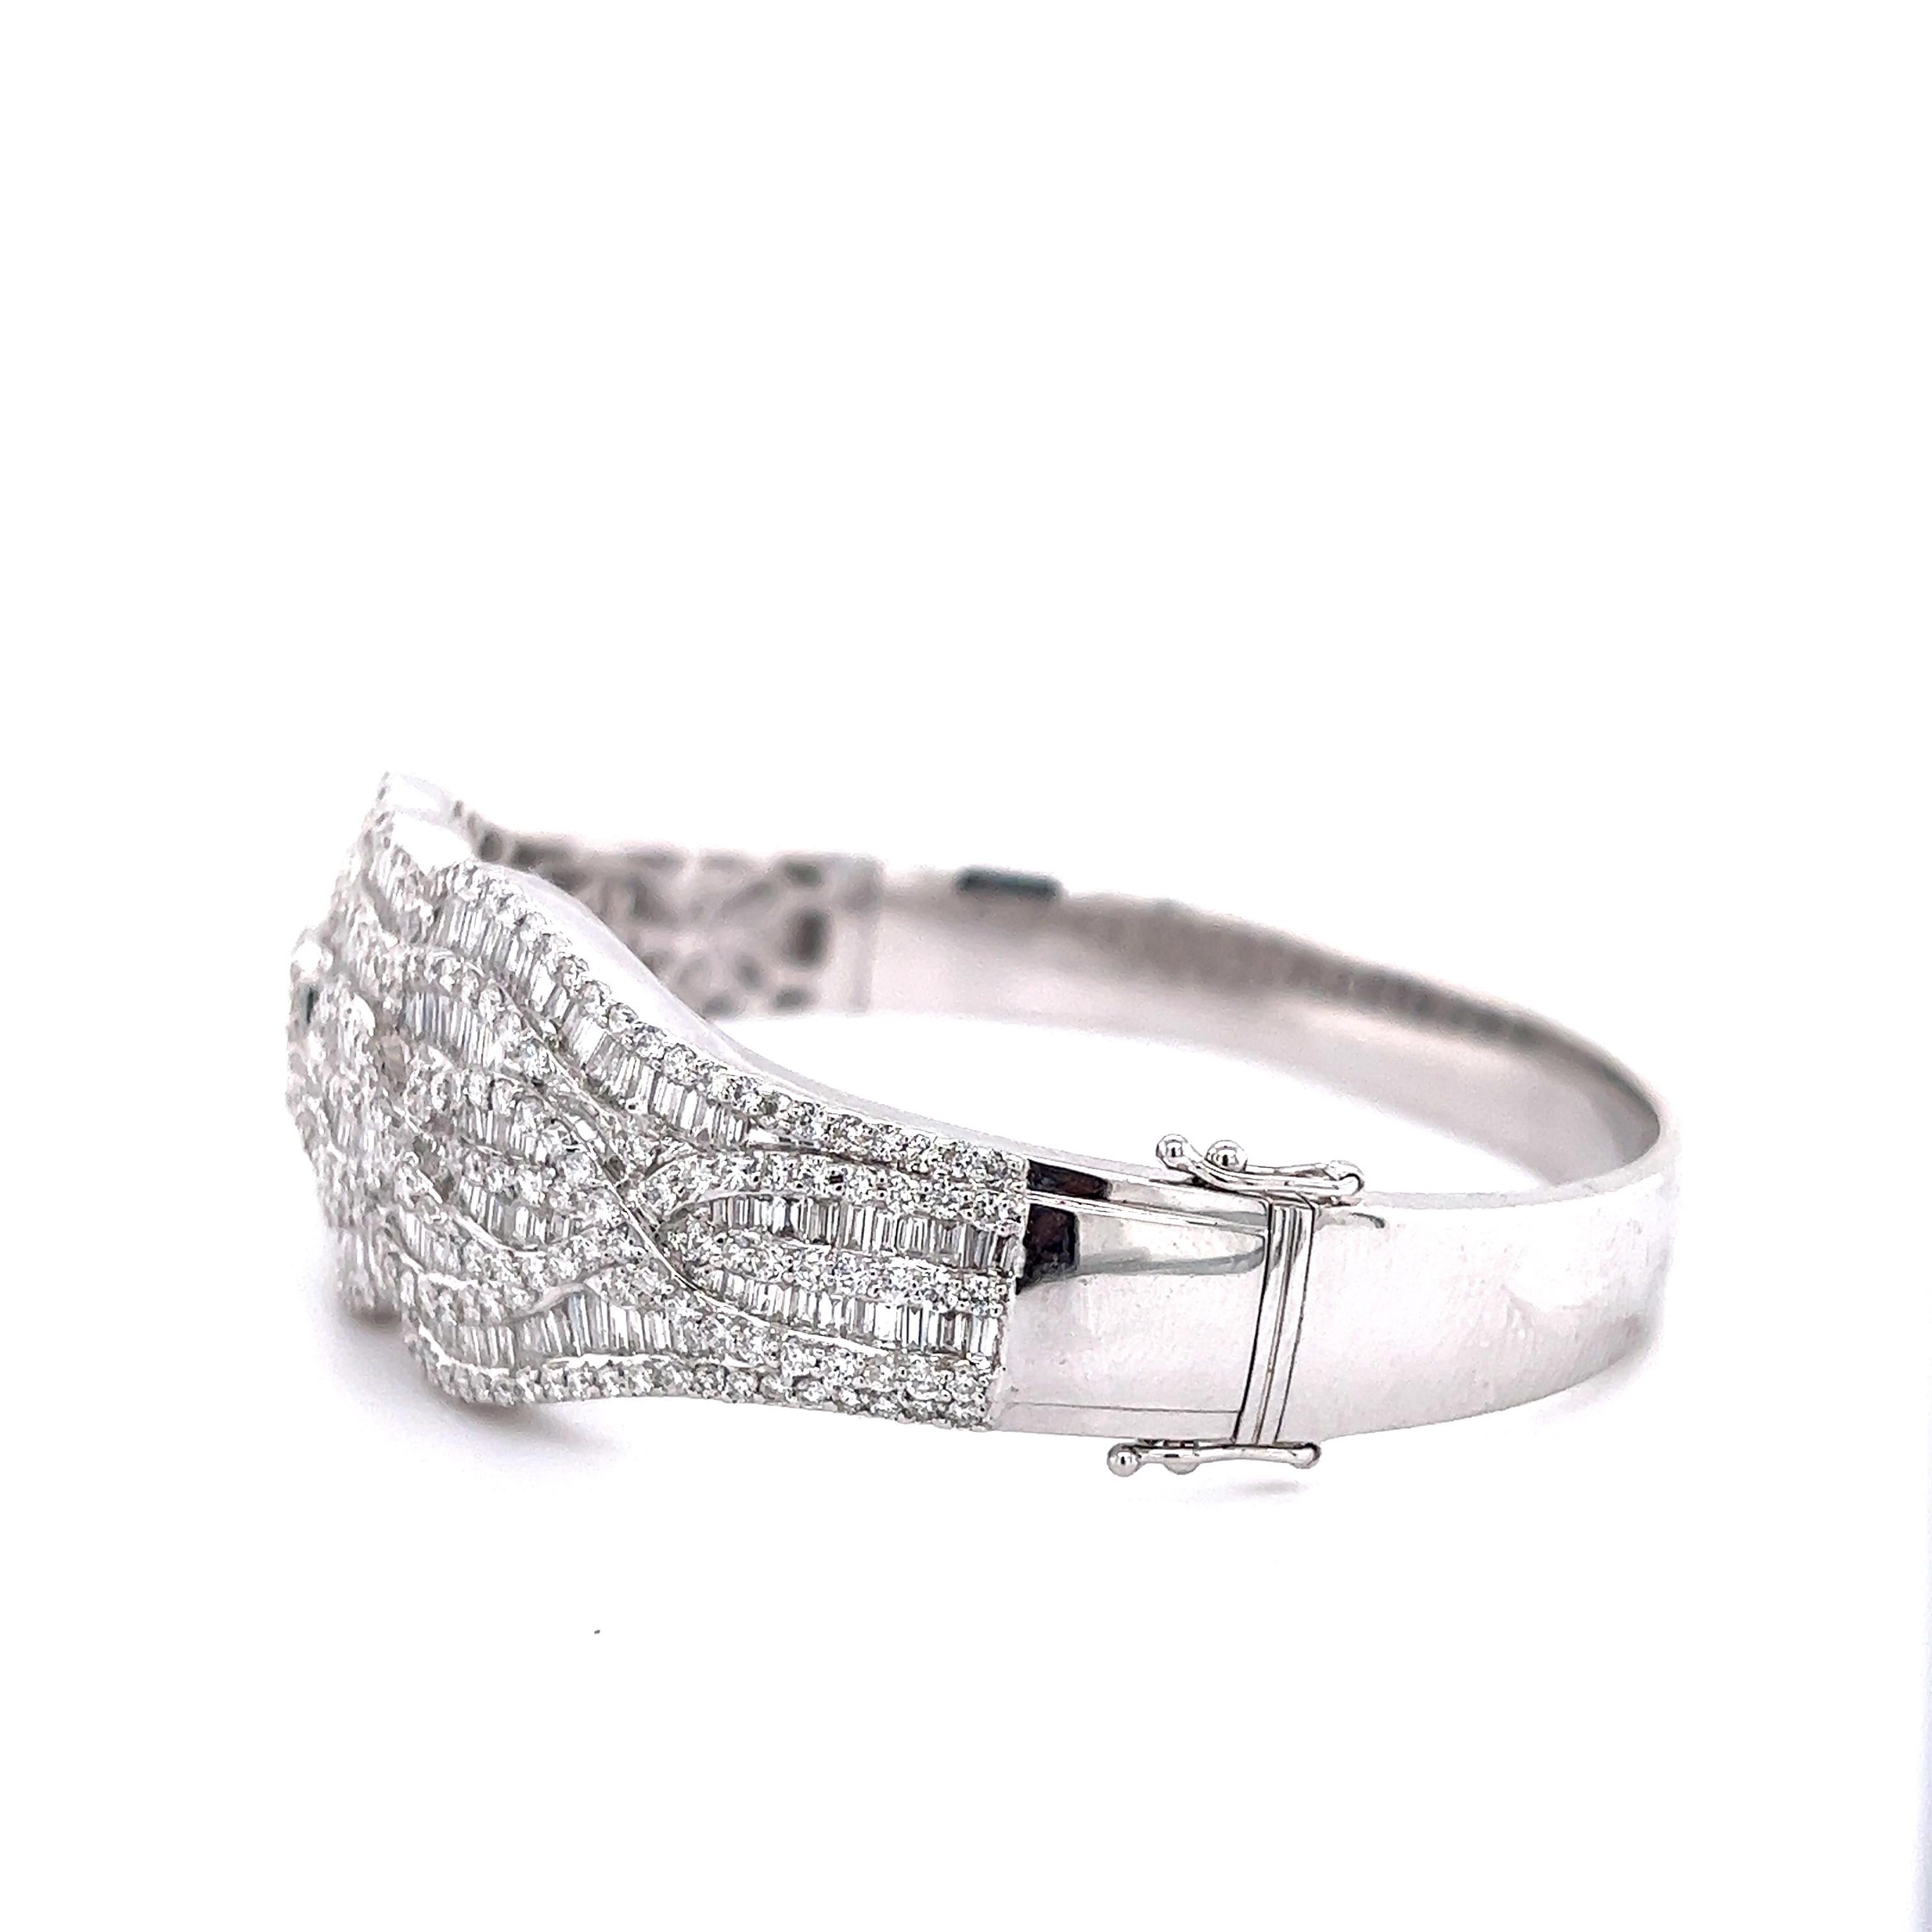 Wunderschönes Diamantarmband aus 18 Karat Weißgold. Das Design ist mit über 15,01 ct. runden Diamanten im Brillant- und Baguetteschliff besetzt, die in der Erde abgebaut wurden. Die Manschette zeigt ein skurriles Muster, denn die Diamanten scheinen